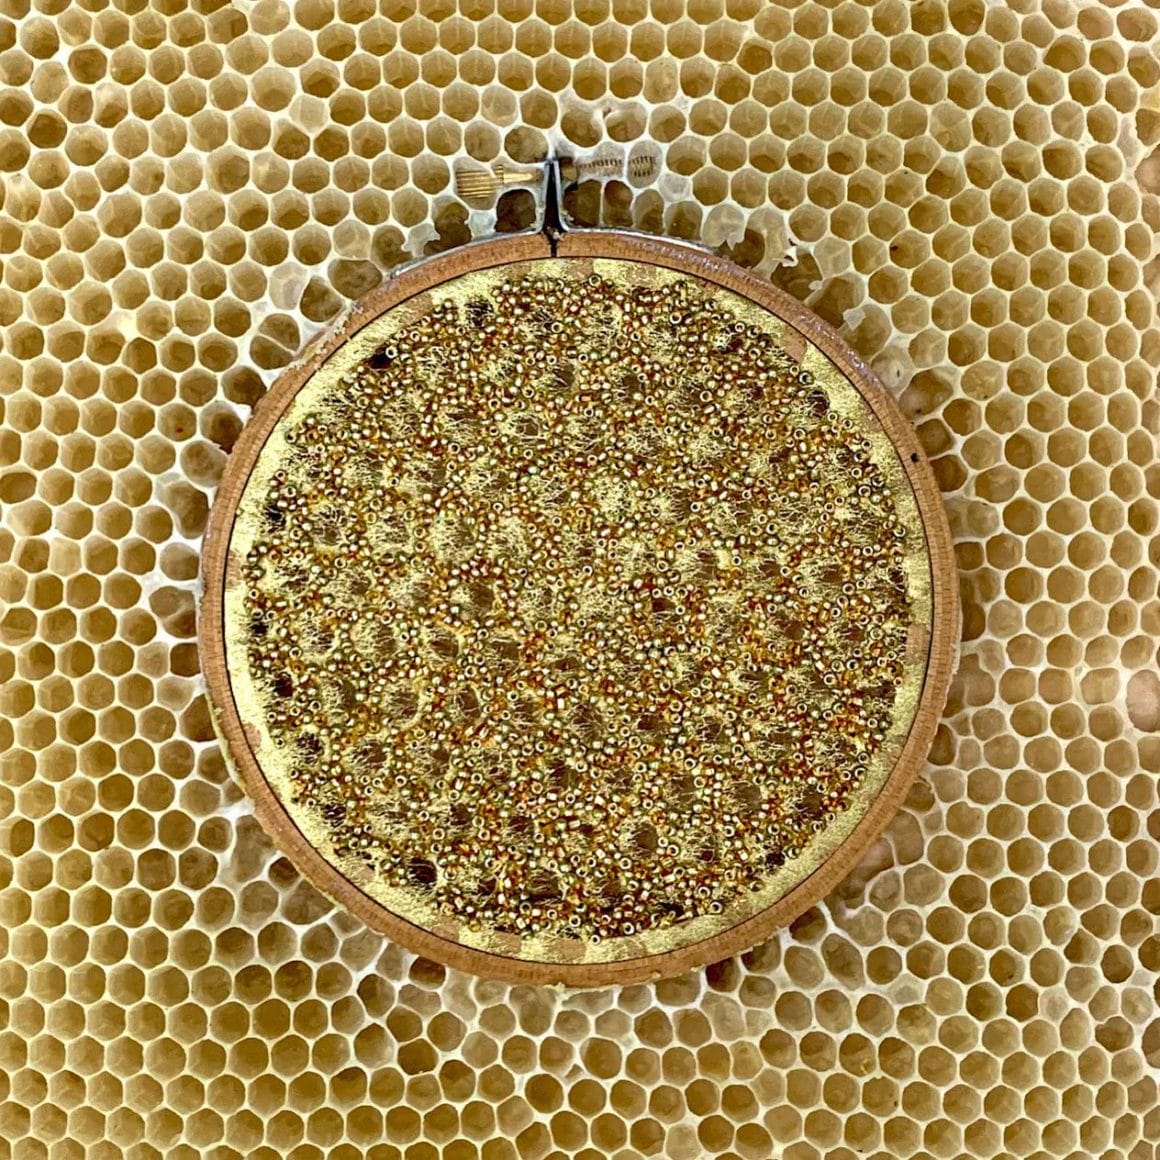 Broderie représentant un motif jaune et avec des perles cuivrées, disposée dans une ruche